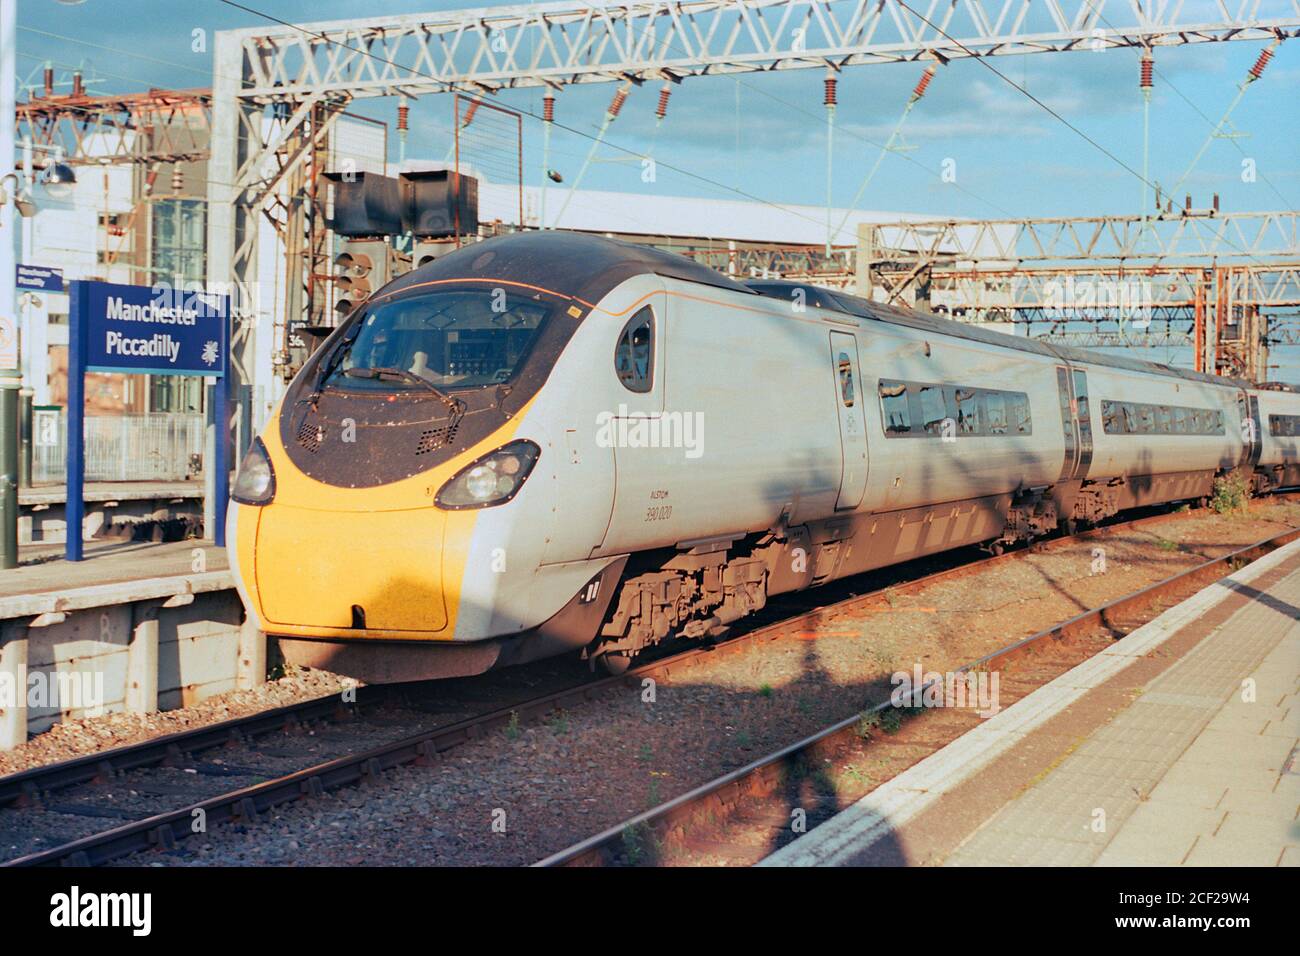 Manchester, UK - 1 settembre 2020: Un treno elettrico ad alta velocità (Classe 390) che opera dalla Avanti West Coast alla stazione di Manchester Piccadilly. Foto Stock